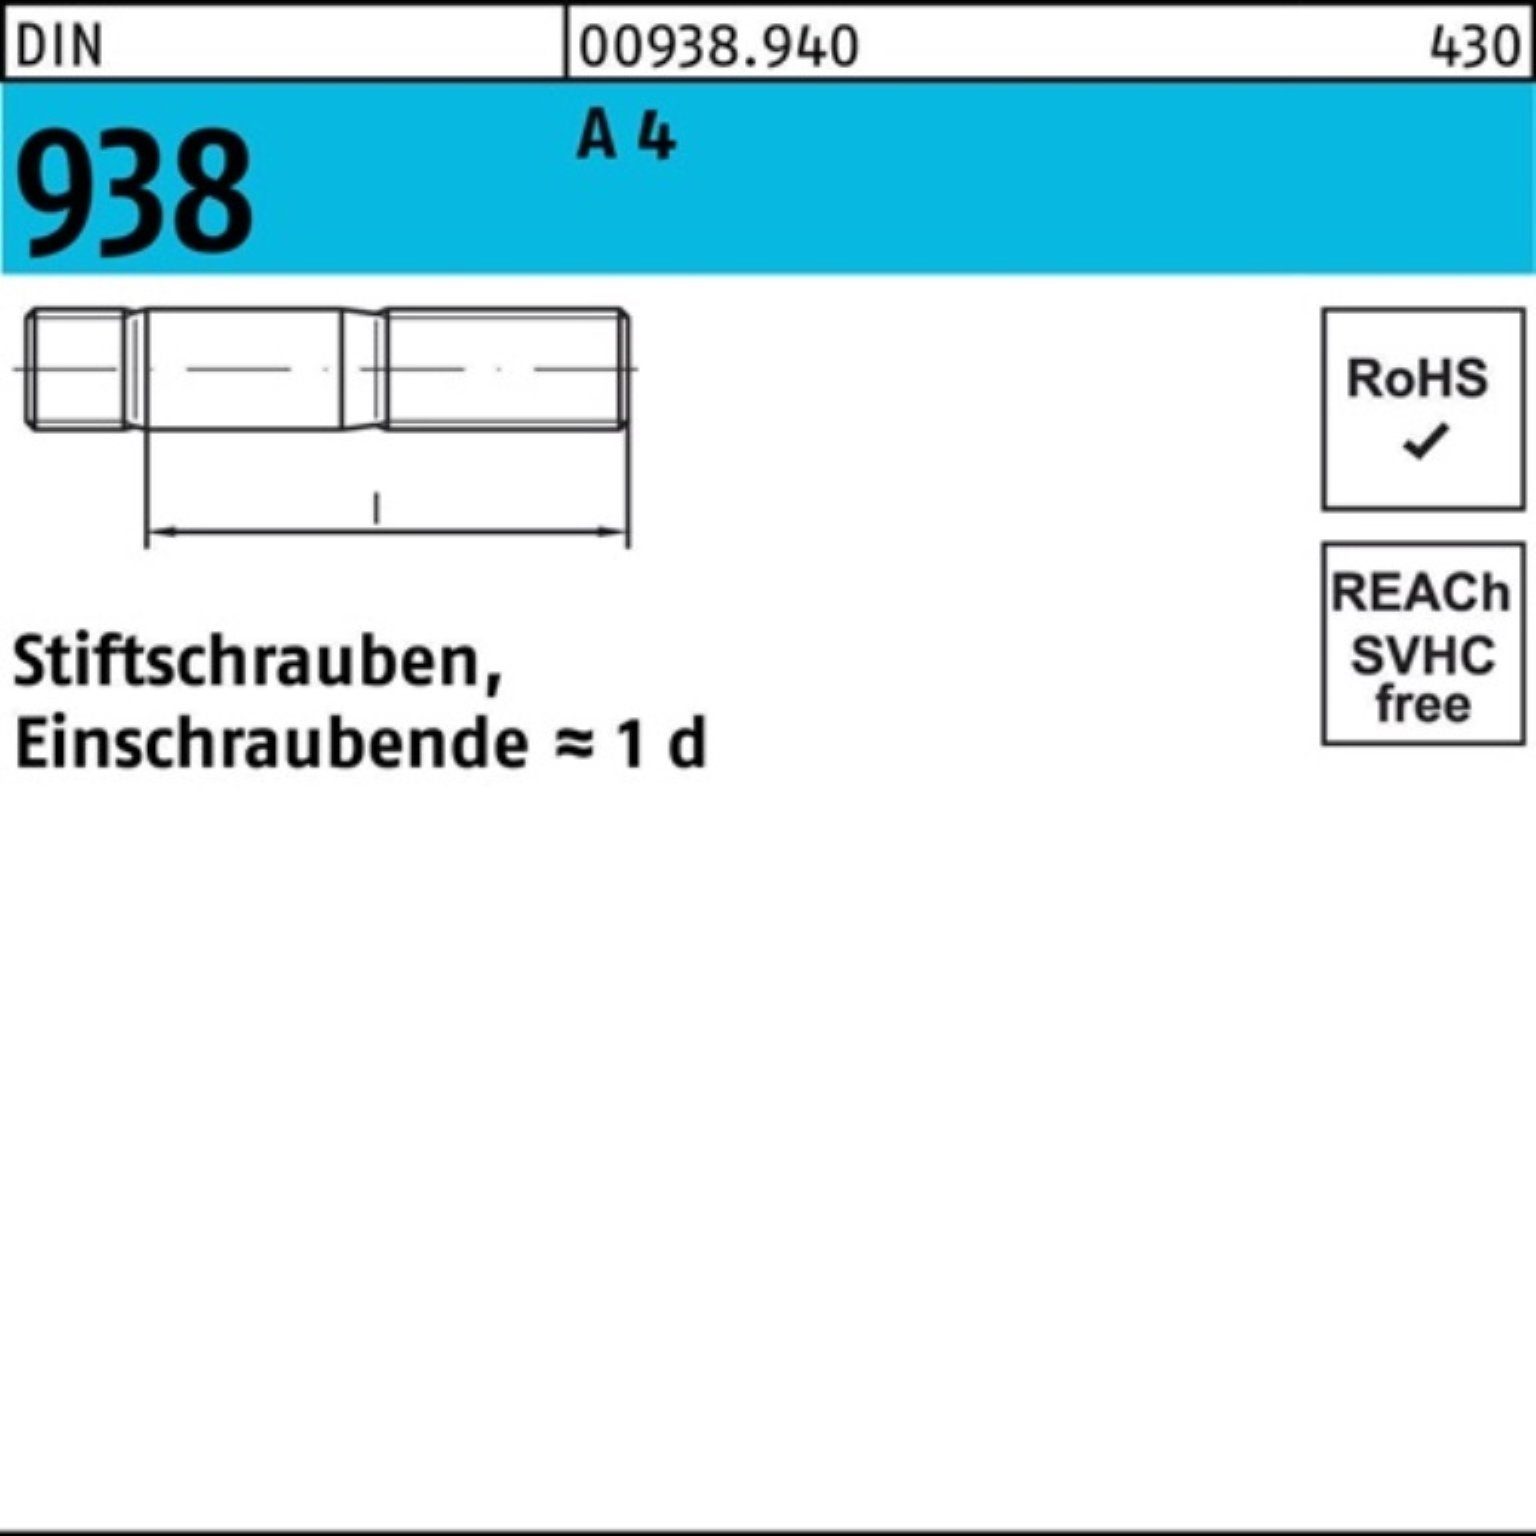 Reyher Stiftschraube Stiftschraube 100er DIN 4 Stück M24x Stif 45 A 938 A 4 Pack DIN 1 938